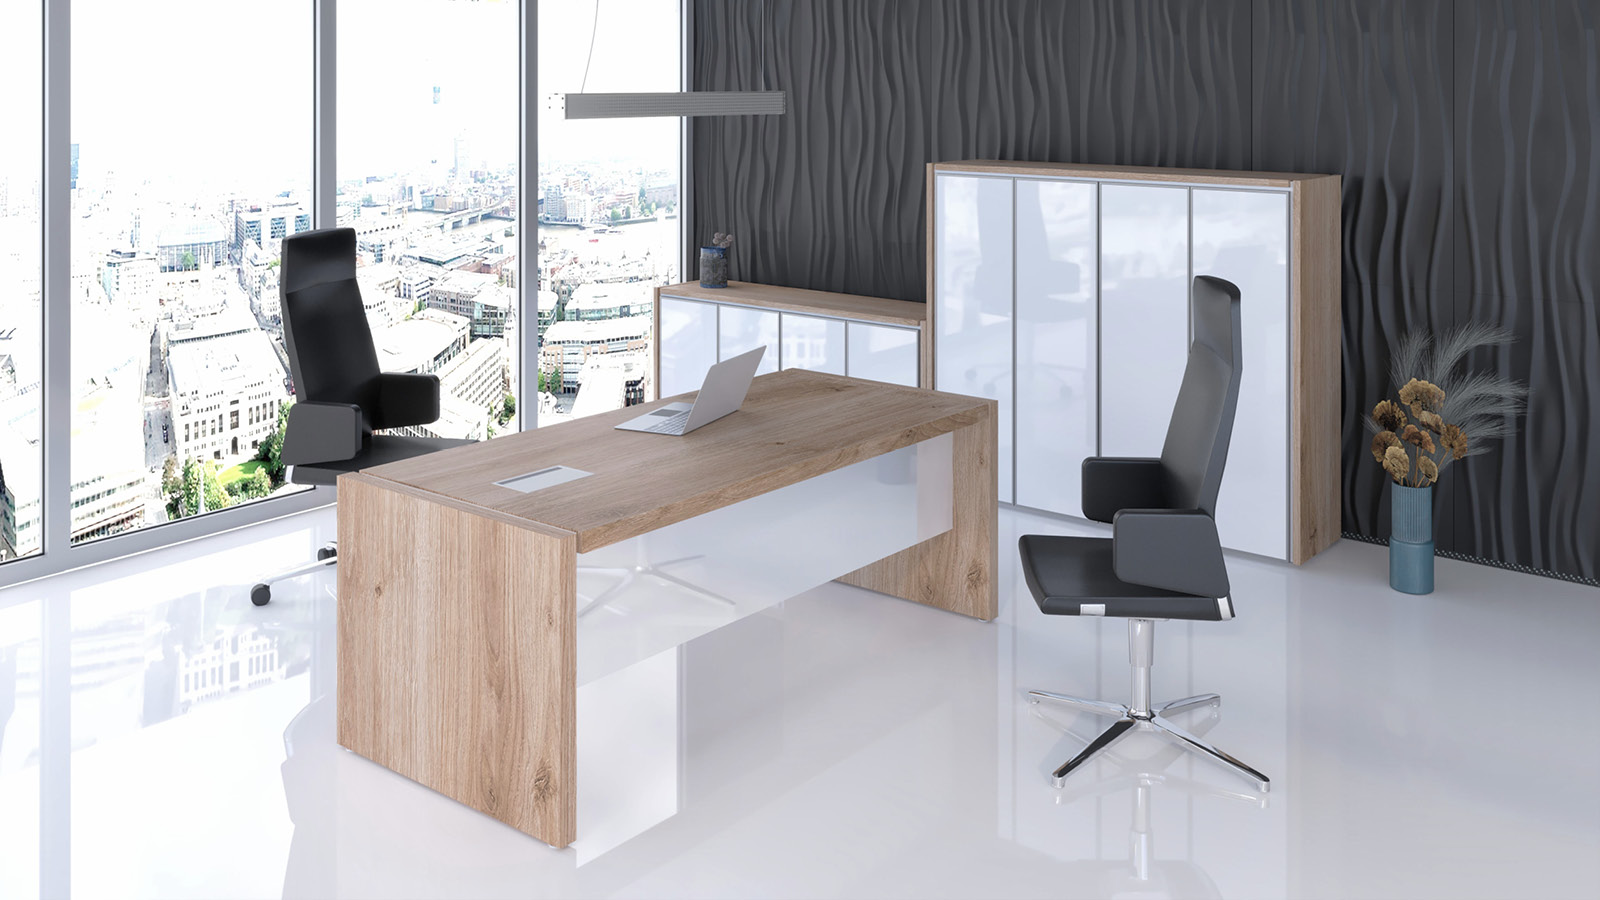 Gabinet w biurowcu został wyposażony w kontrastowe biurko z blendą, niską oraz wysoką szafę na akta oraz dwa skórzane fotele.